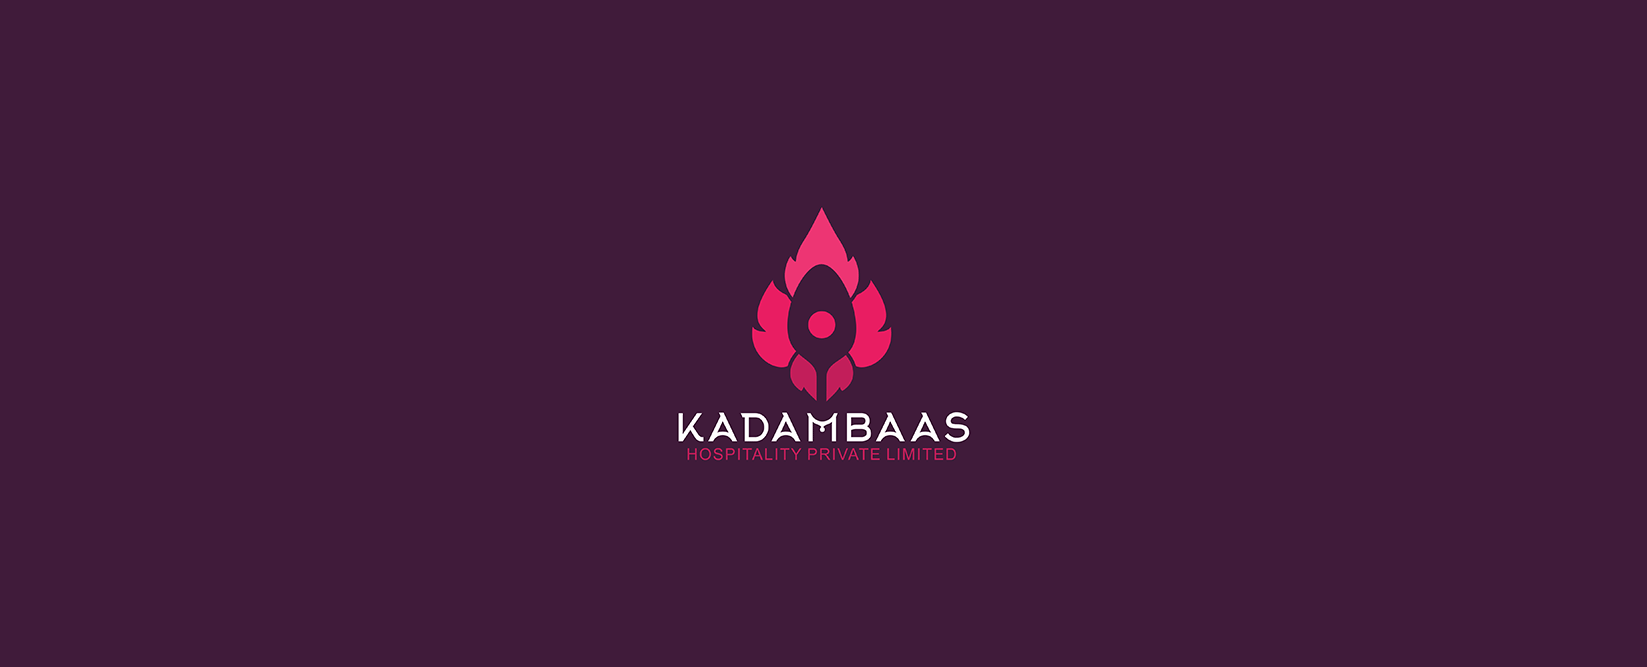 kadambass-logo